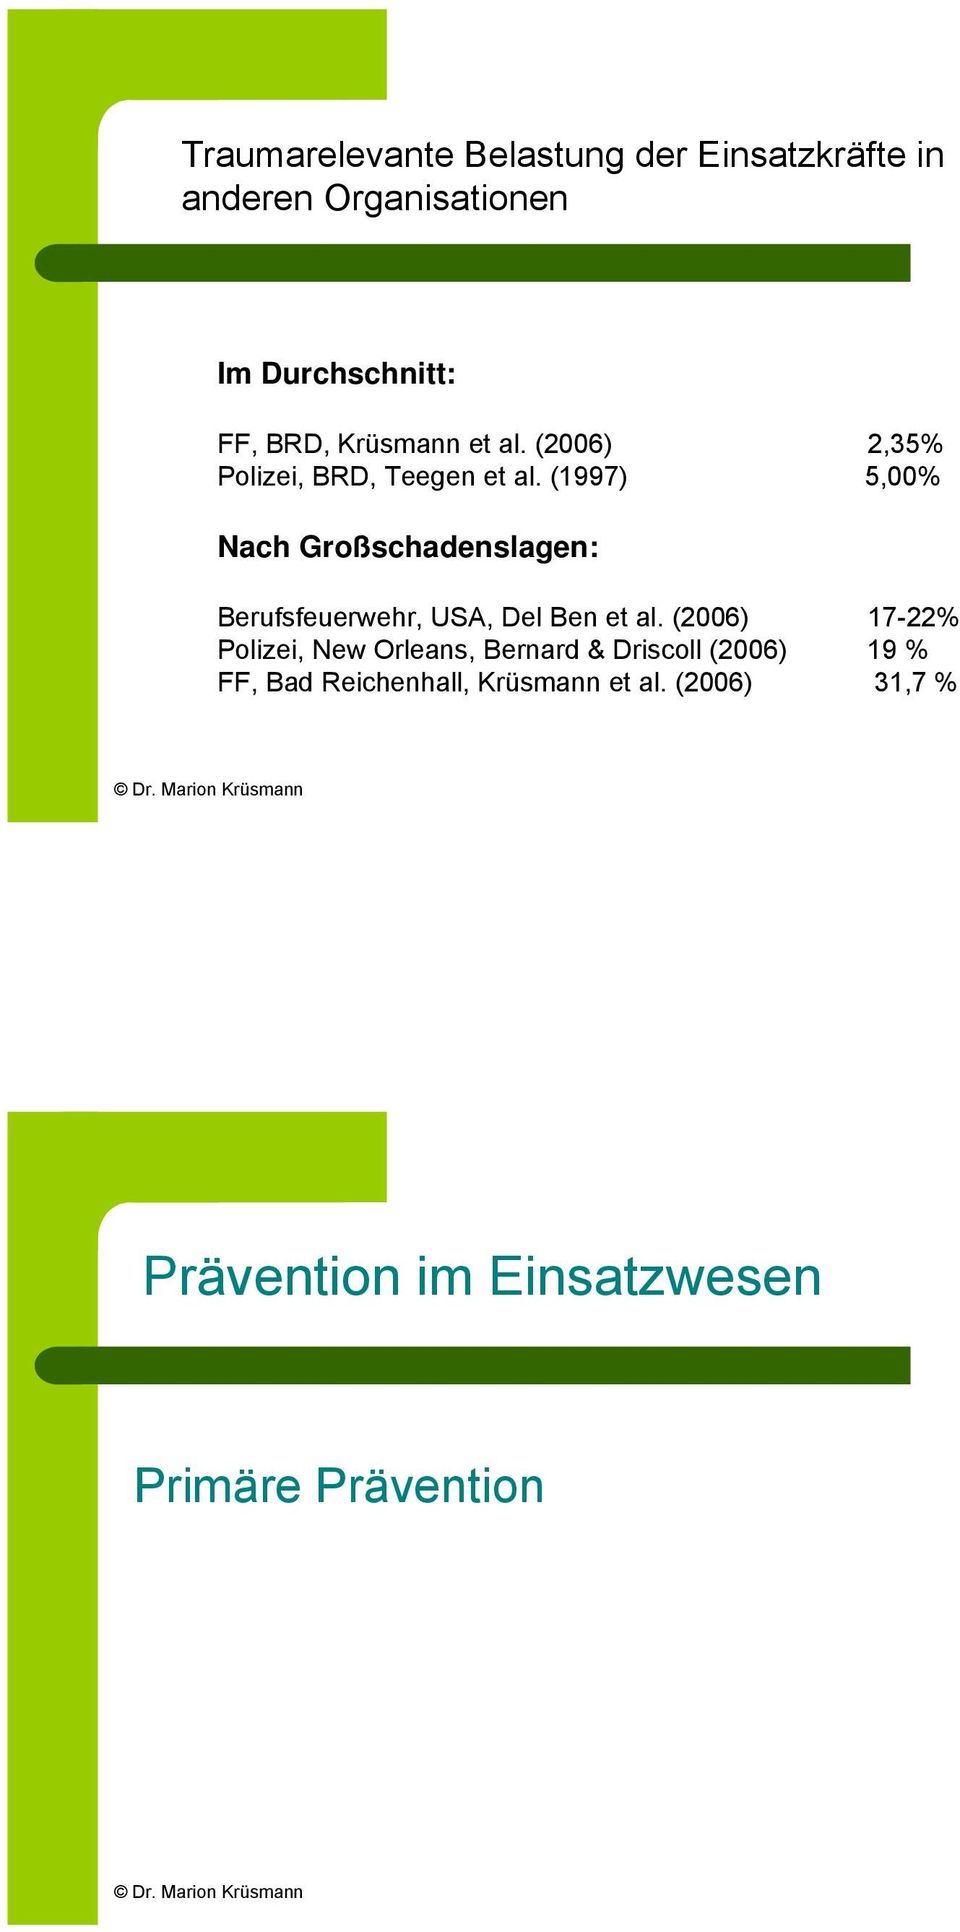 (1997) 5,00% Nach Großschadenslagen: Berufsfeuerwehr, USA, Del Ben et al.